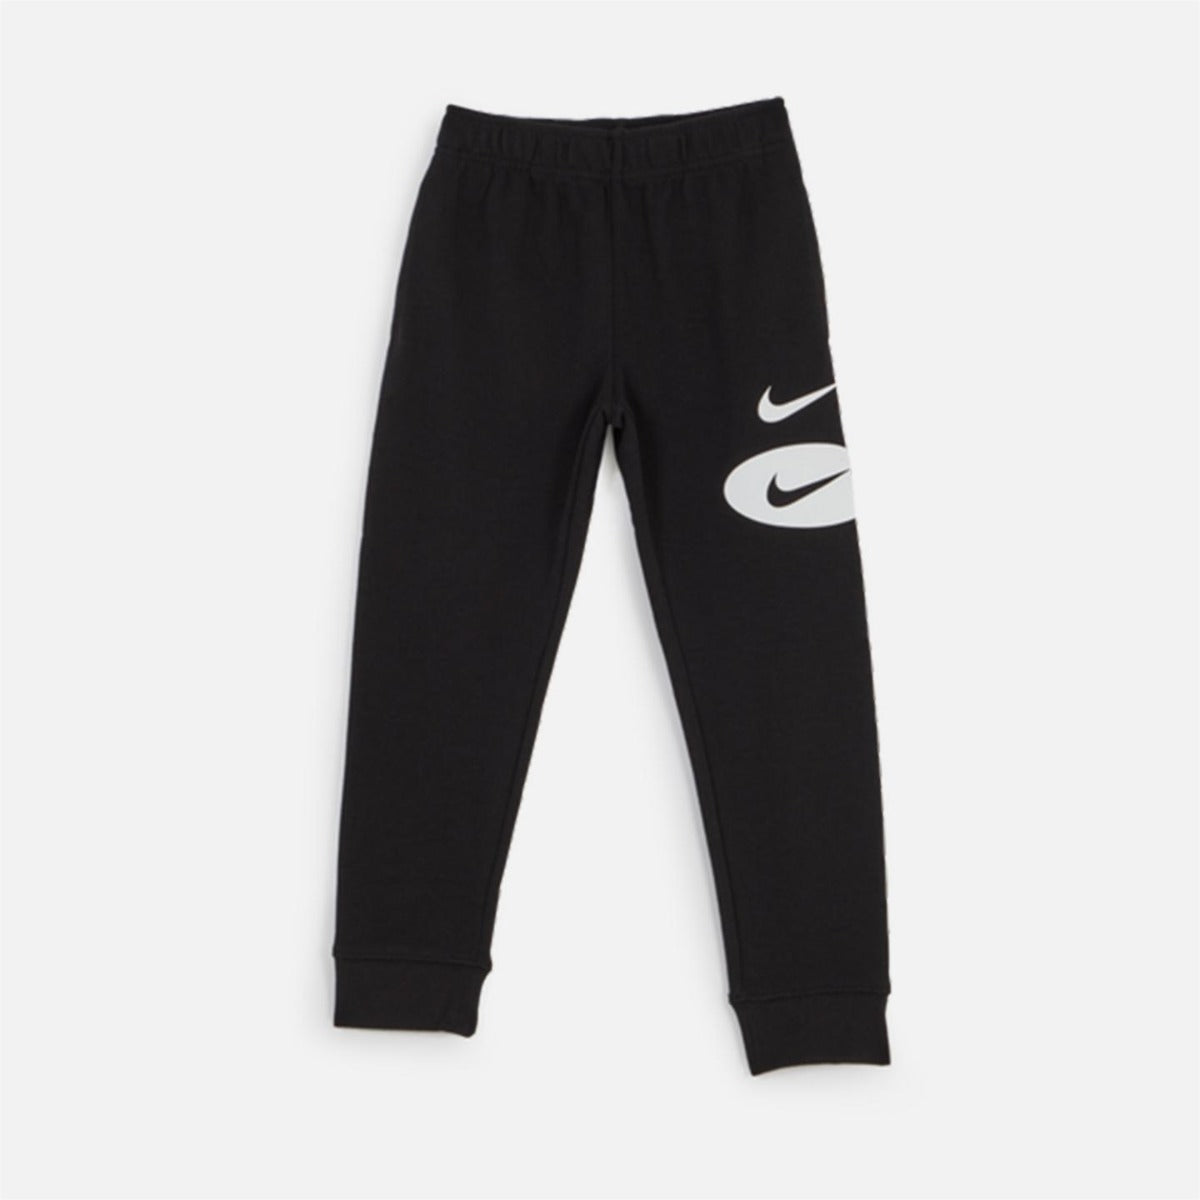 Nike Sportswear Hose Kinder – Schwarz/Weiß